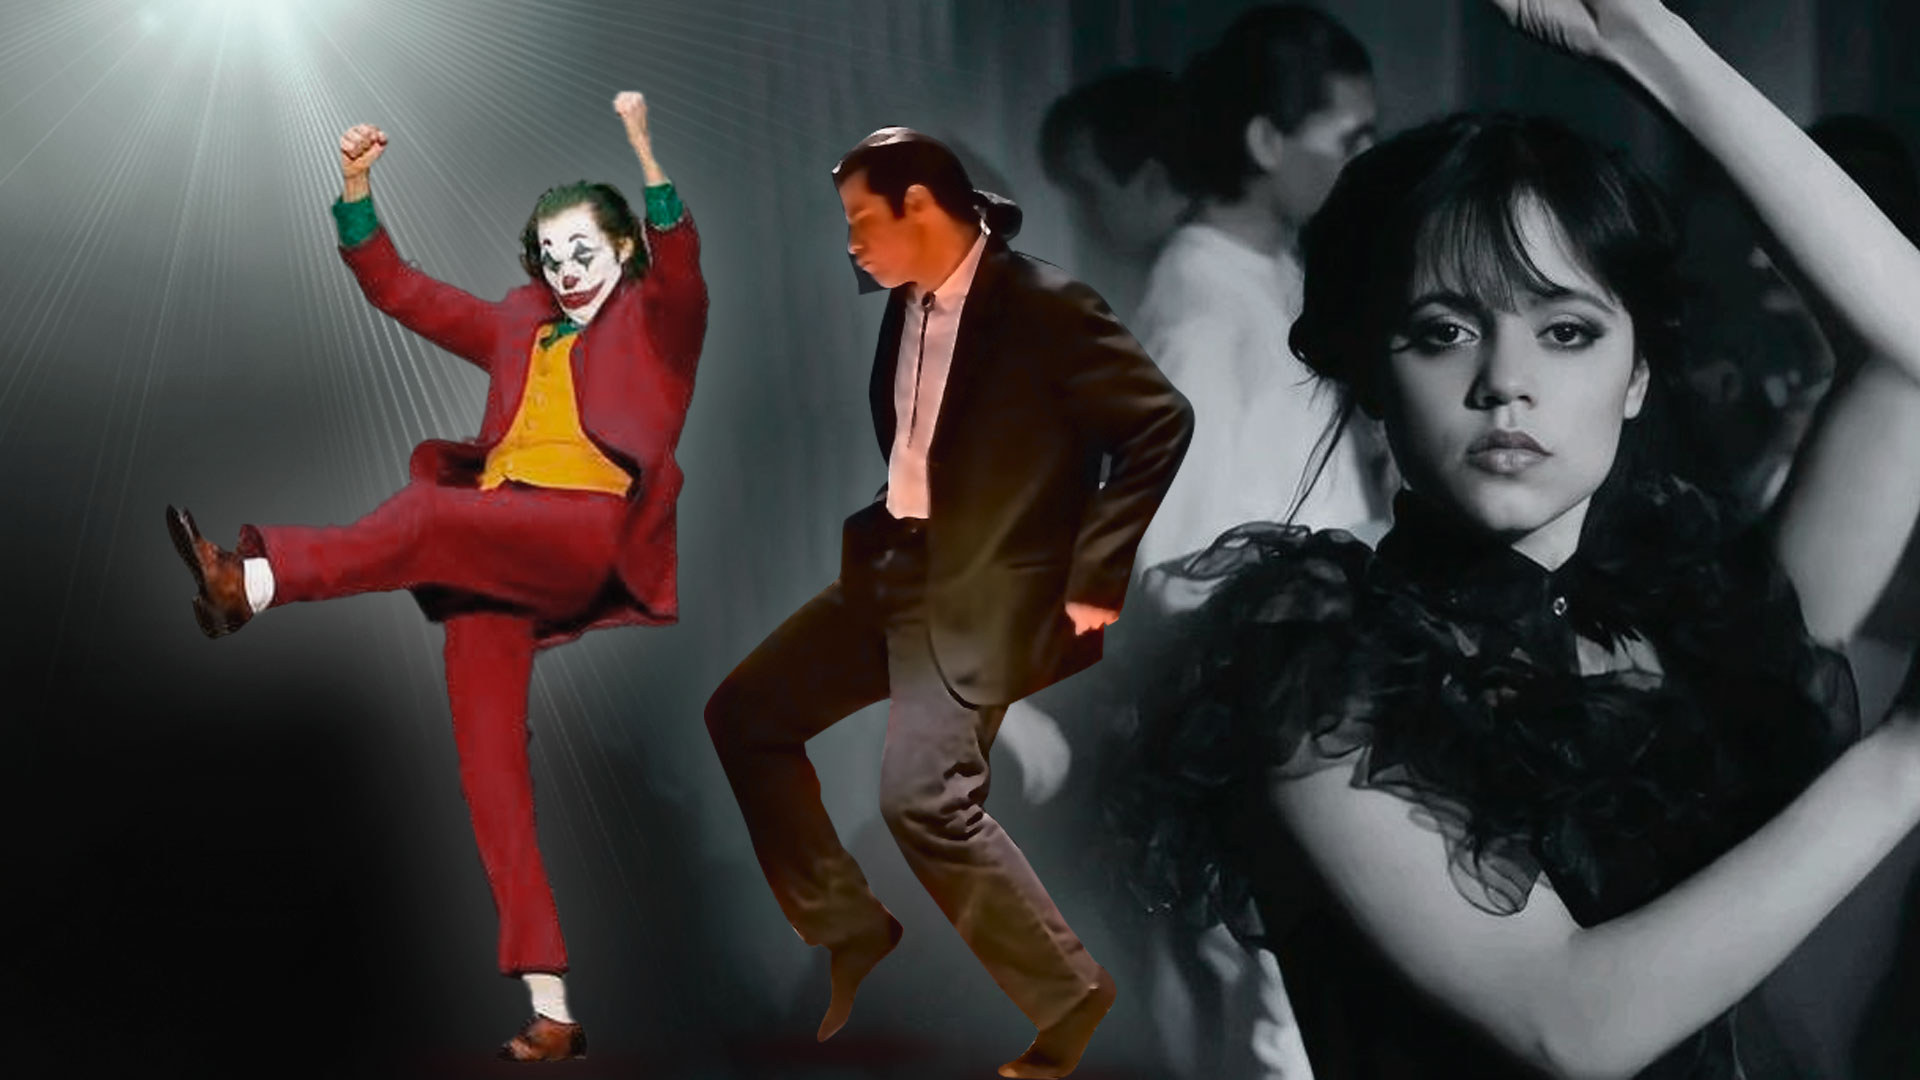 De Jenna Ortega en “Merlina” a John Travolta en “Saturday Night Fever”: los bailes más icónicos que marcaron generaciones